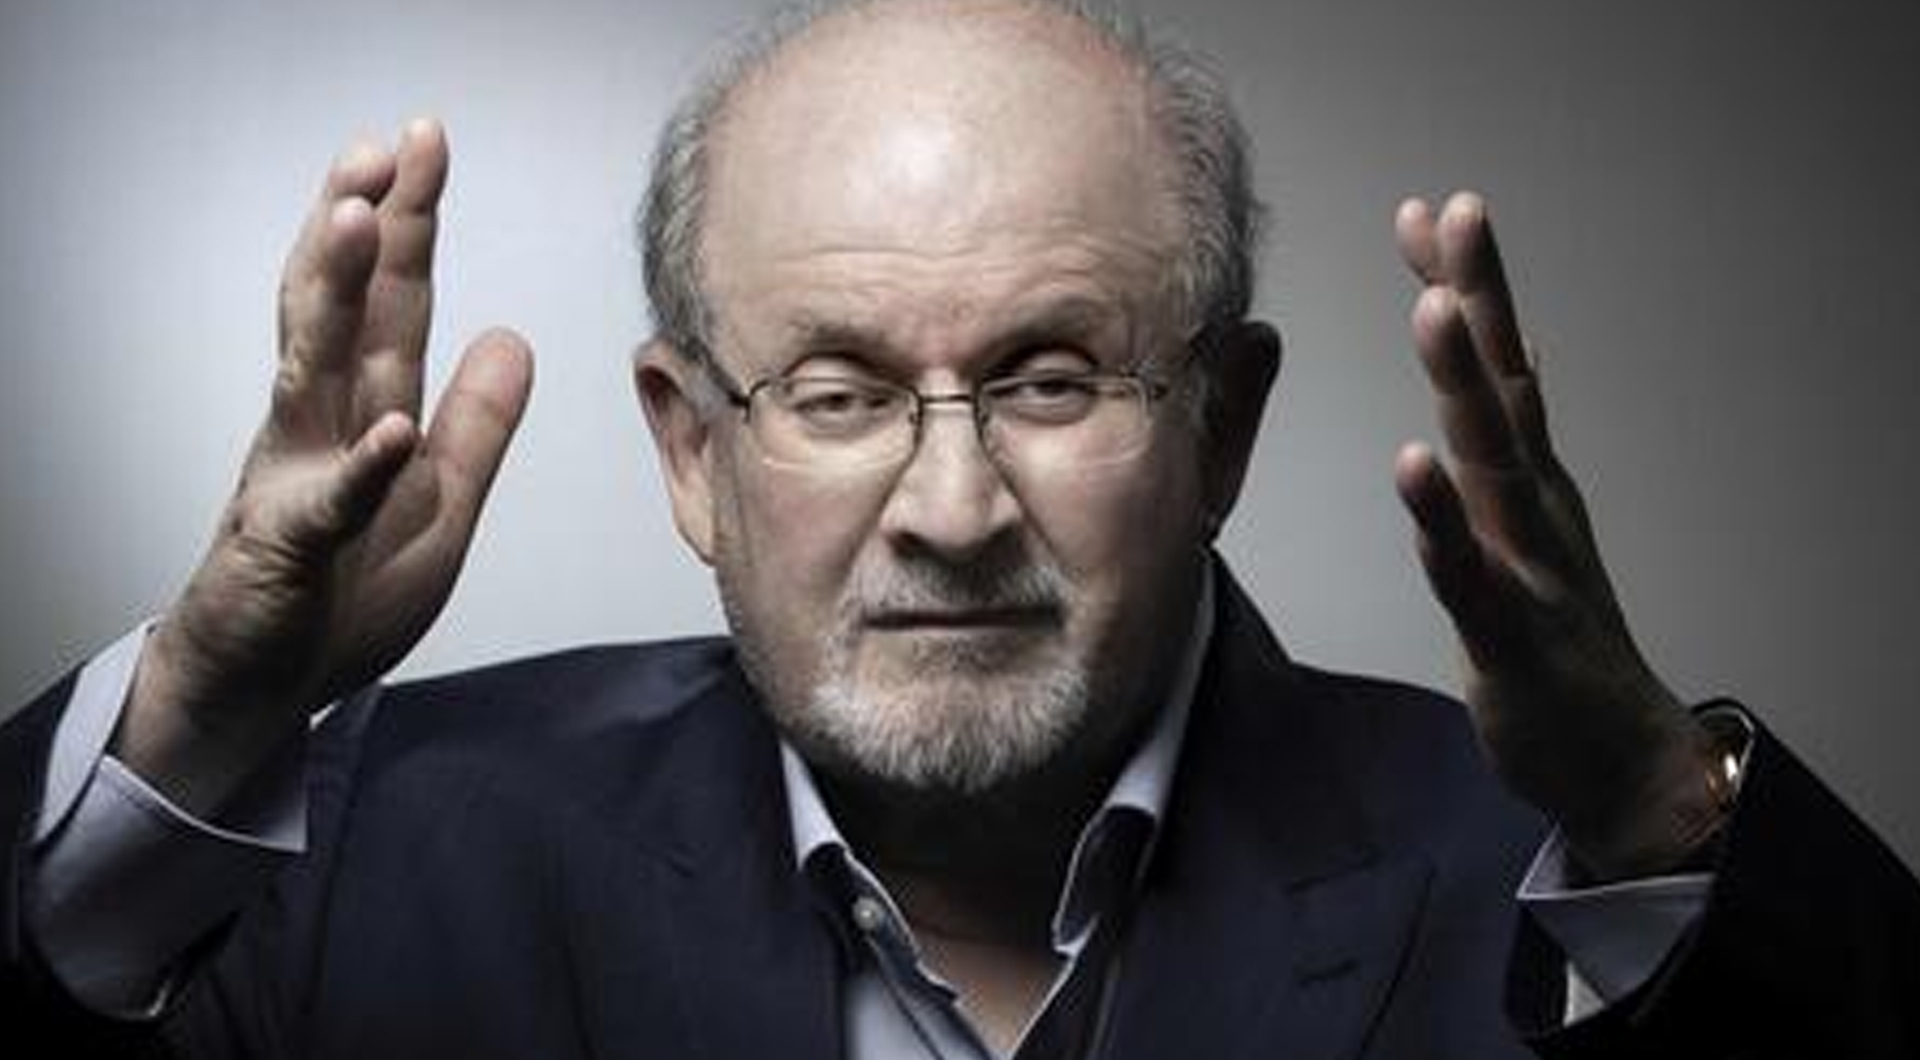 Il terrorista islamico che ha voluto uccidere Rushdie l’ha fatto ottemperando a ciò che Allah prescrive nel Corano e a ciò che ha detto e ha fatto Maometto. Dobbiamo mettere fuori legge l’islam dentro casa nostra